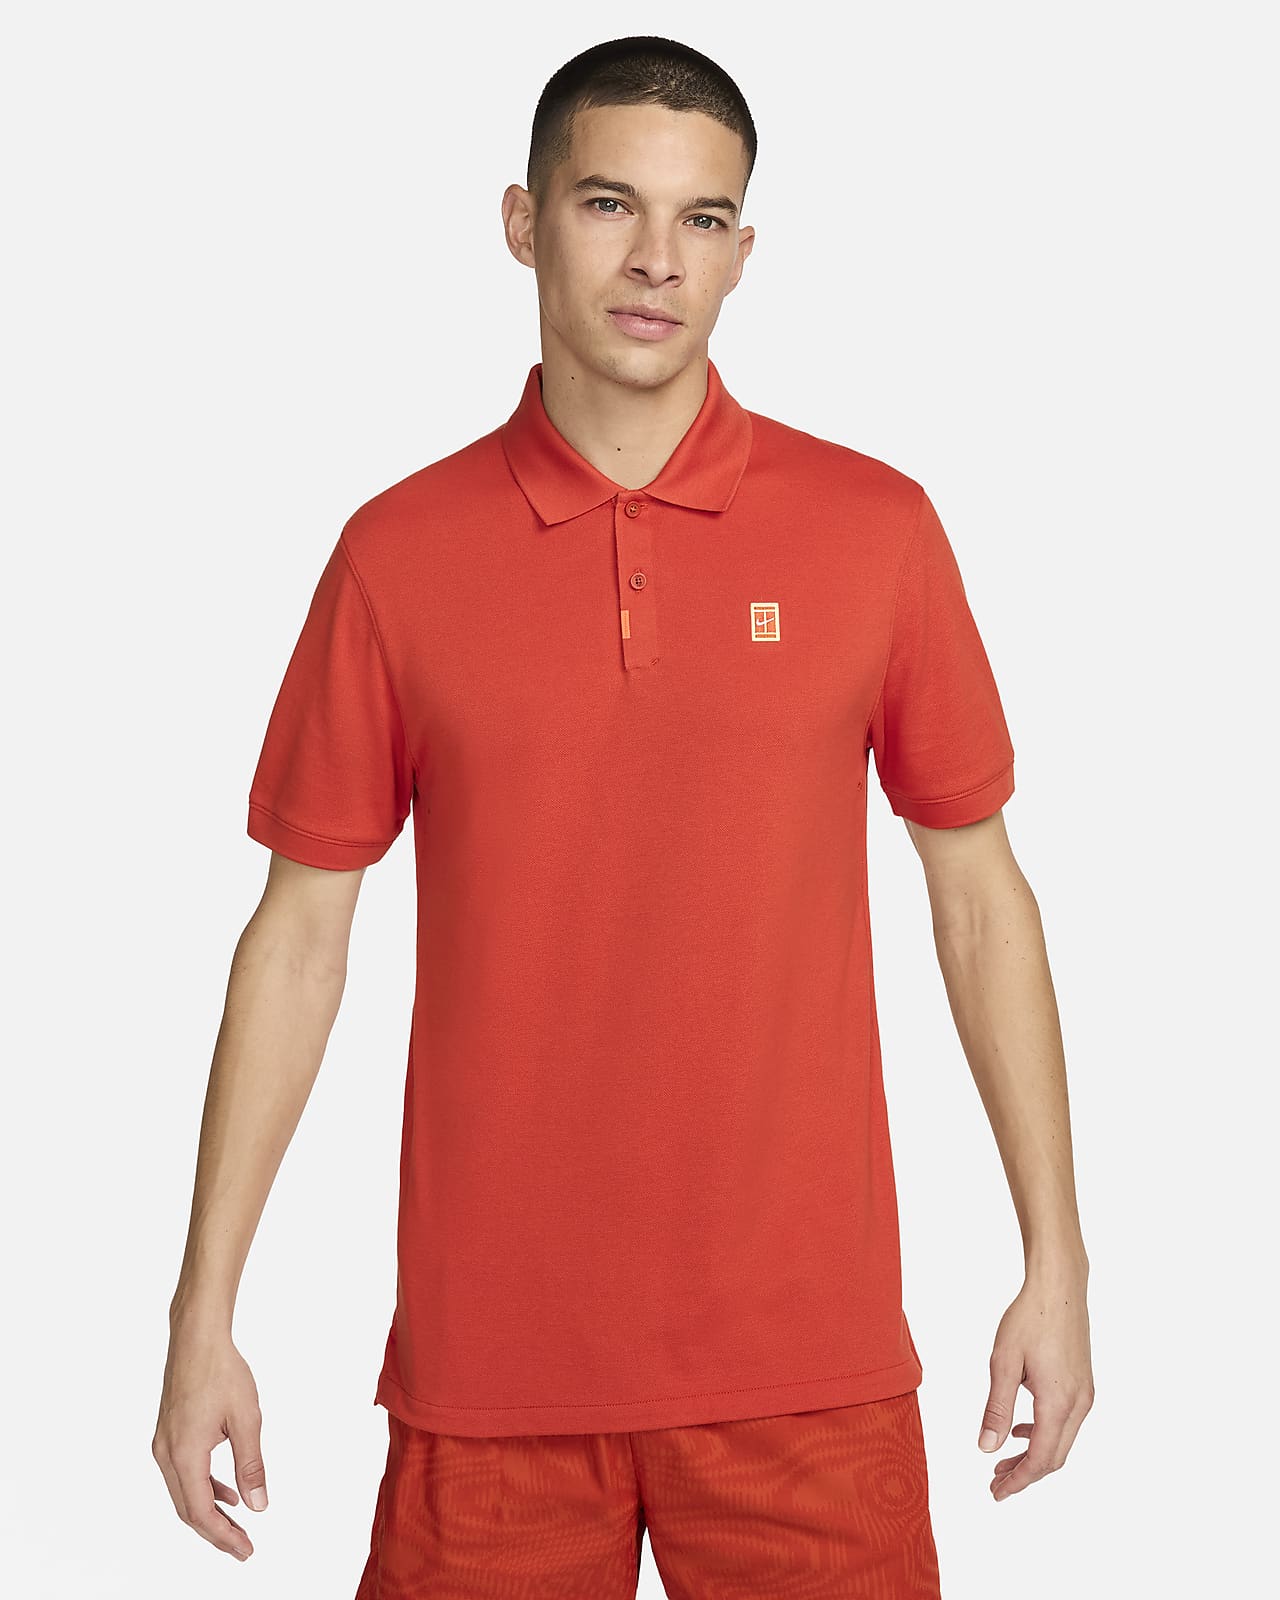 Das Nike Polo Herren-Poloshirt in schmaler Passform